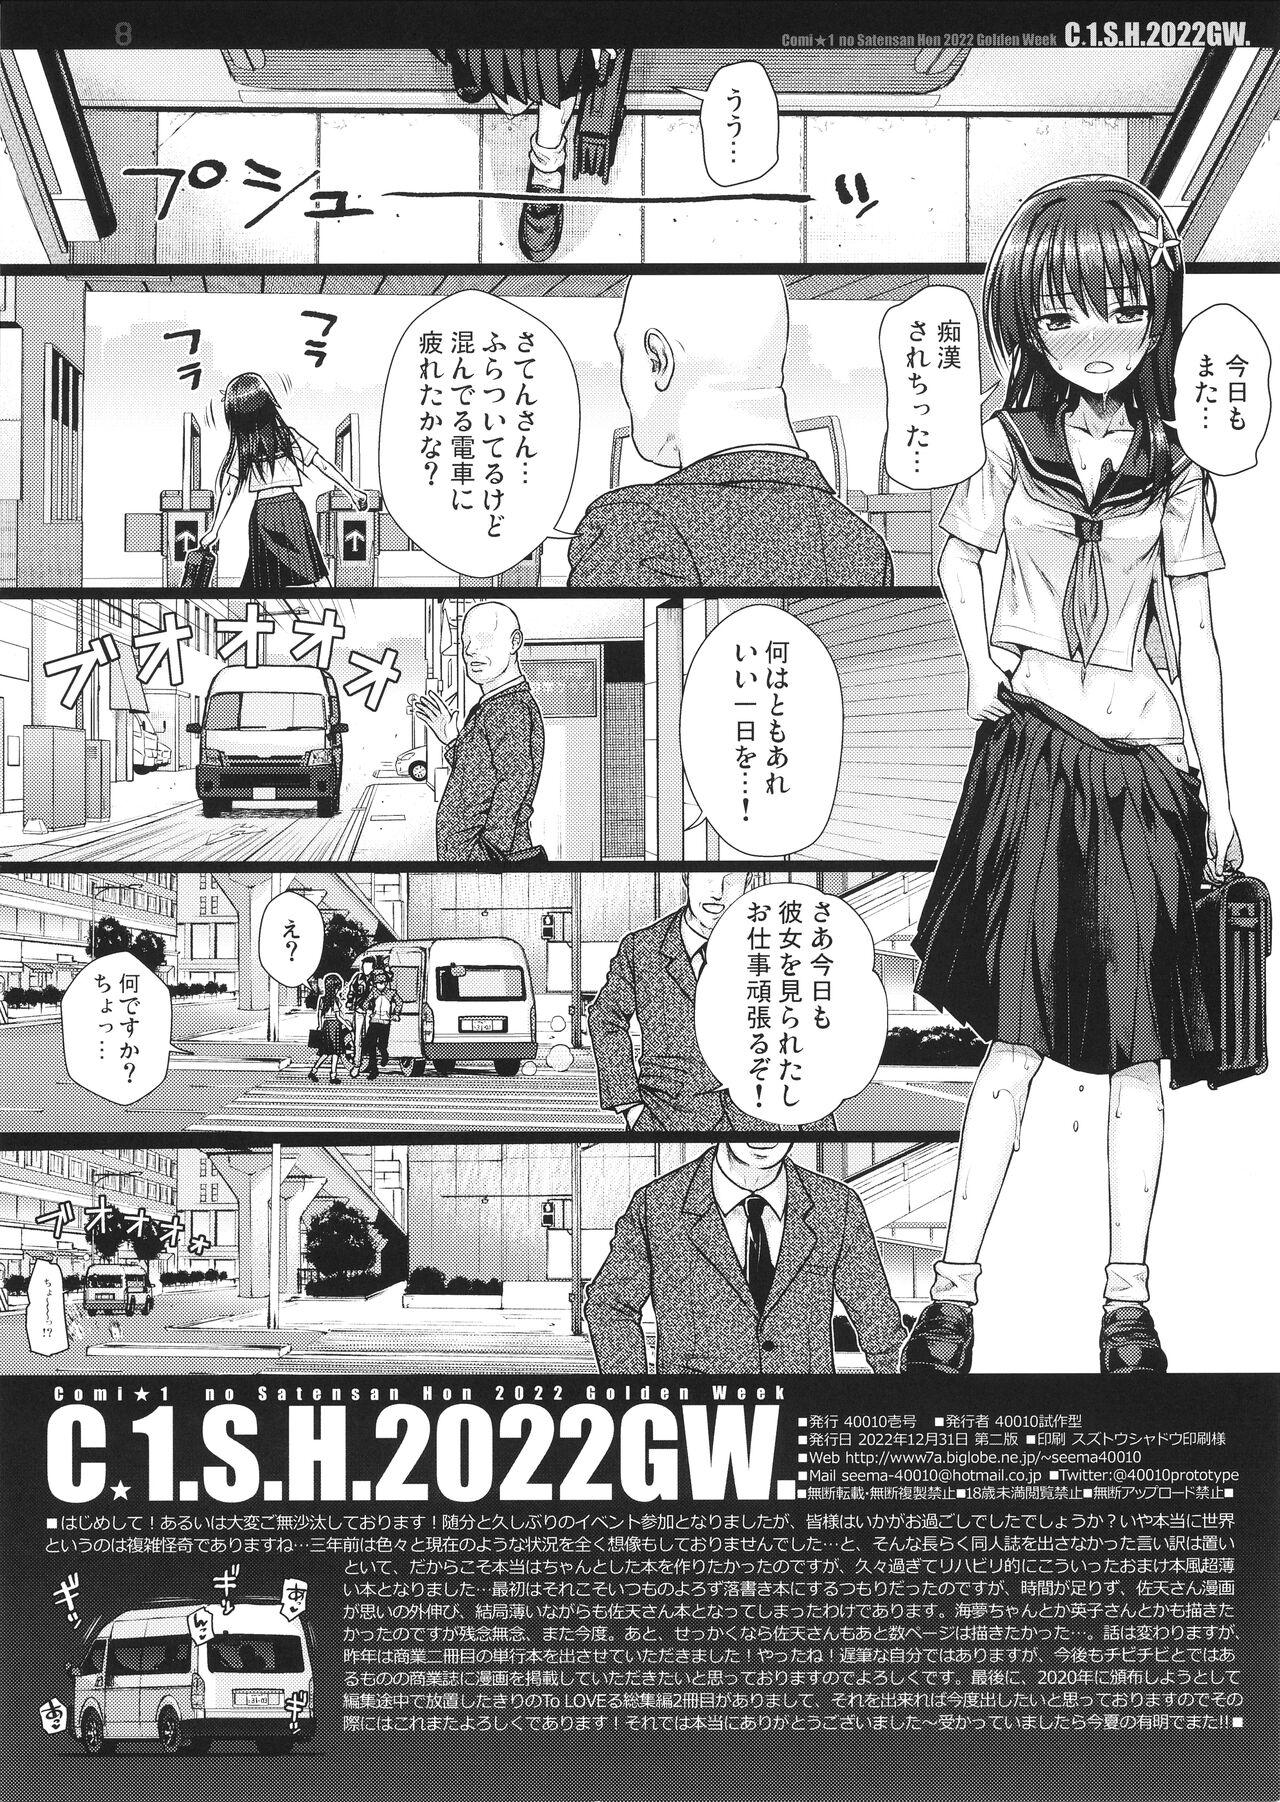 C☆1.S.H.2022GW. 7